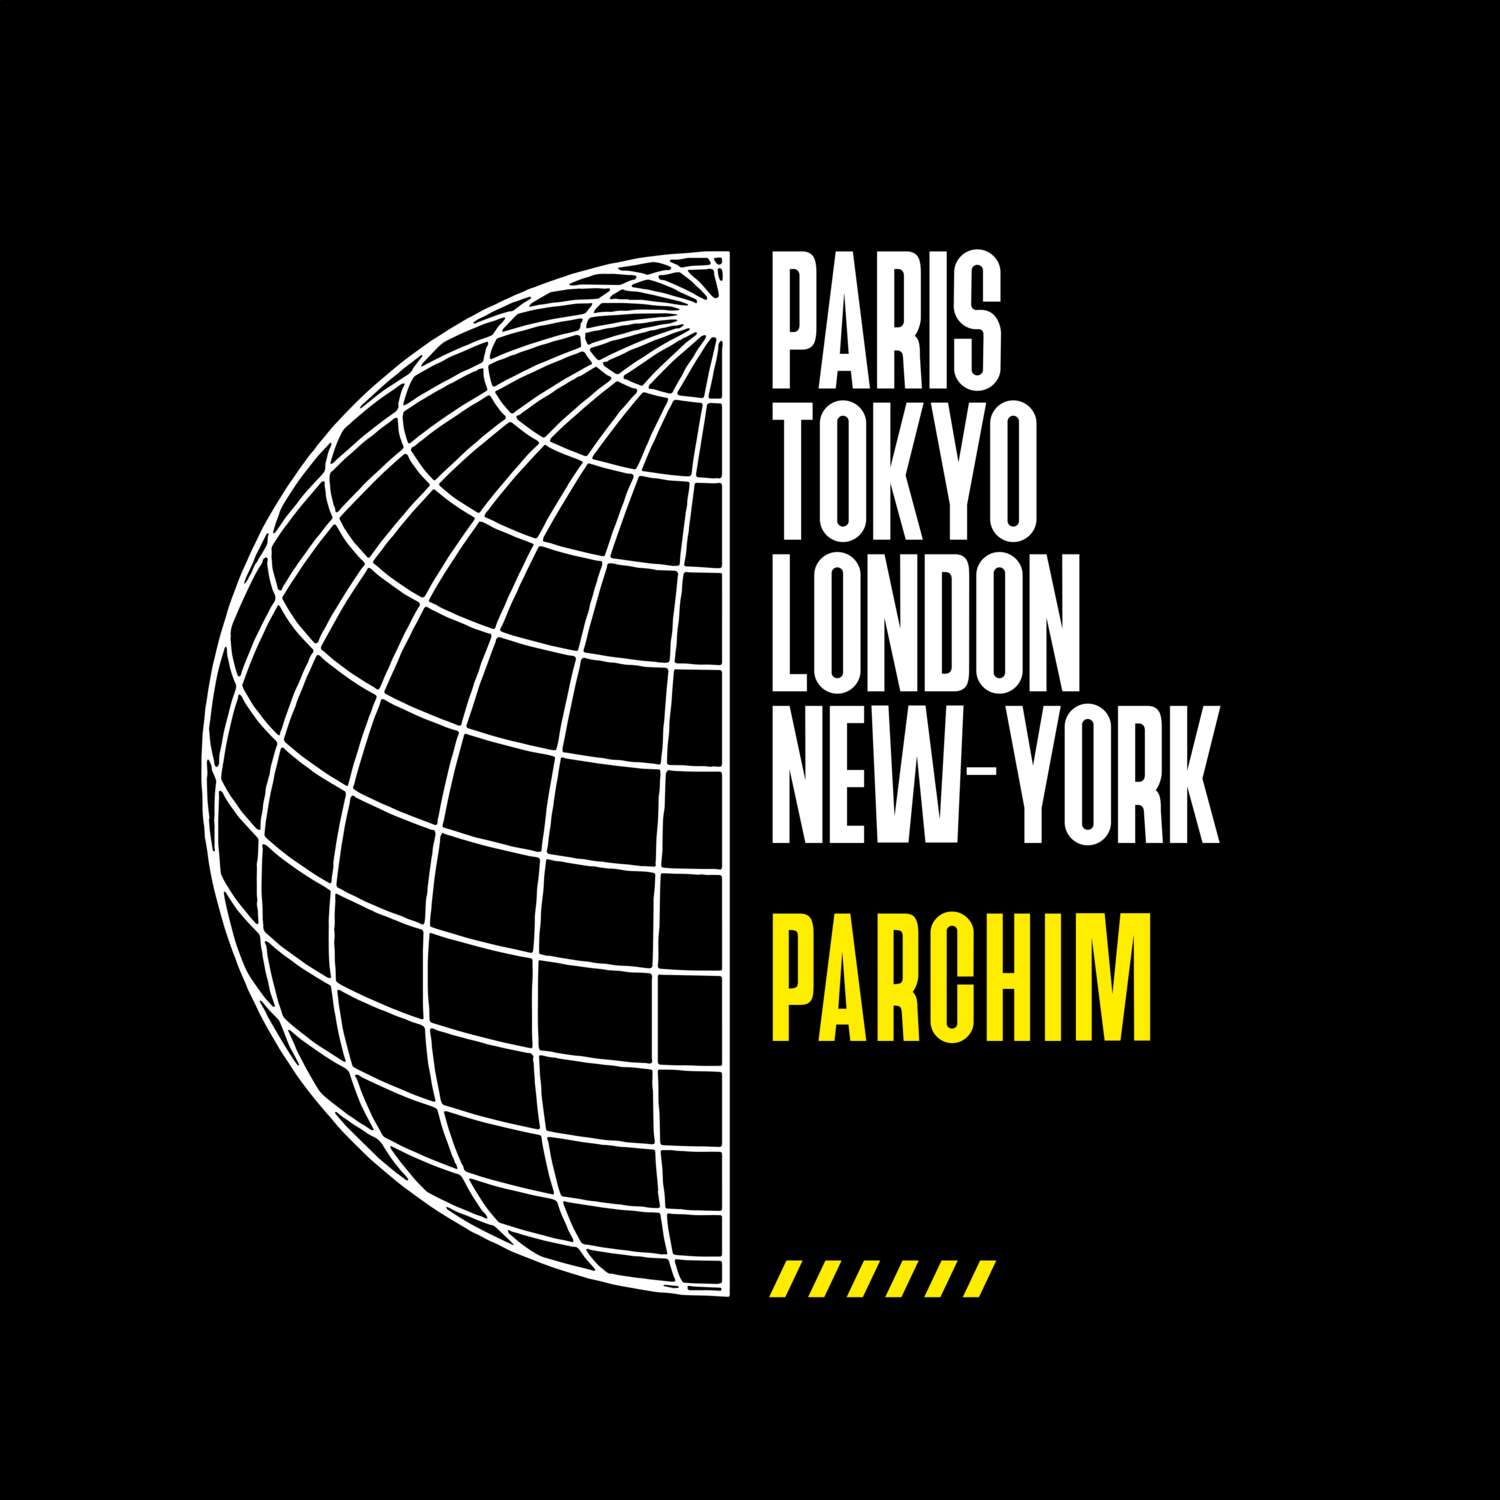 Parchim T-Shirt »Paris Tokyo London«